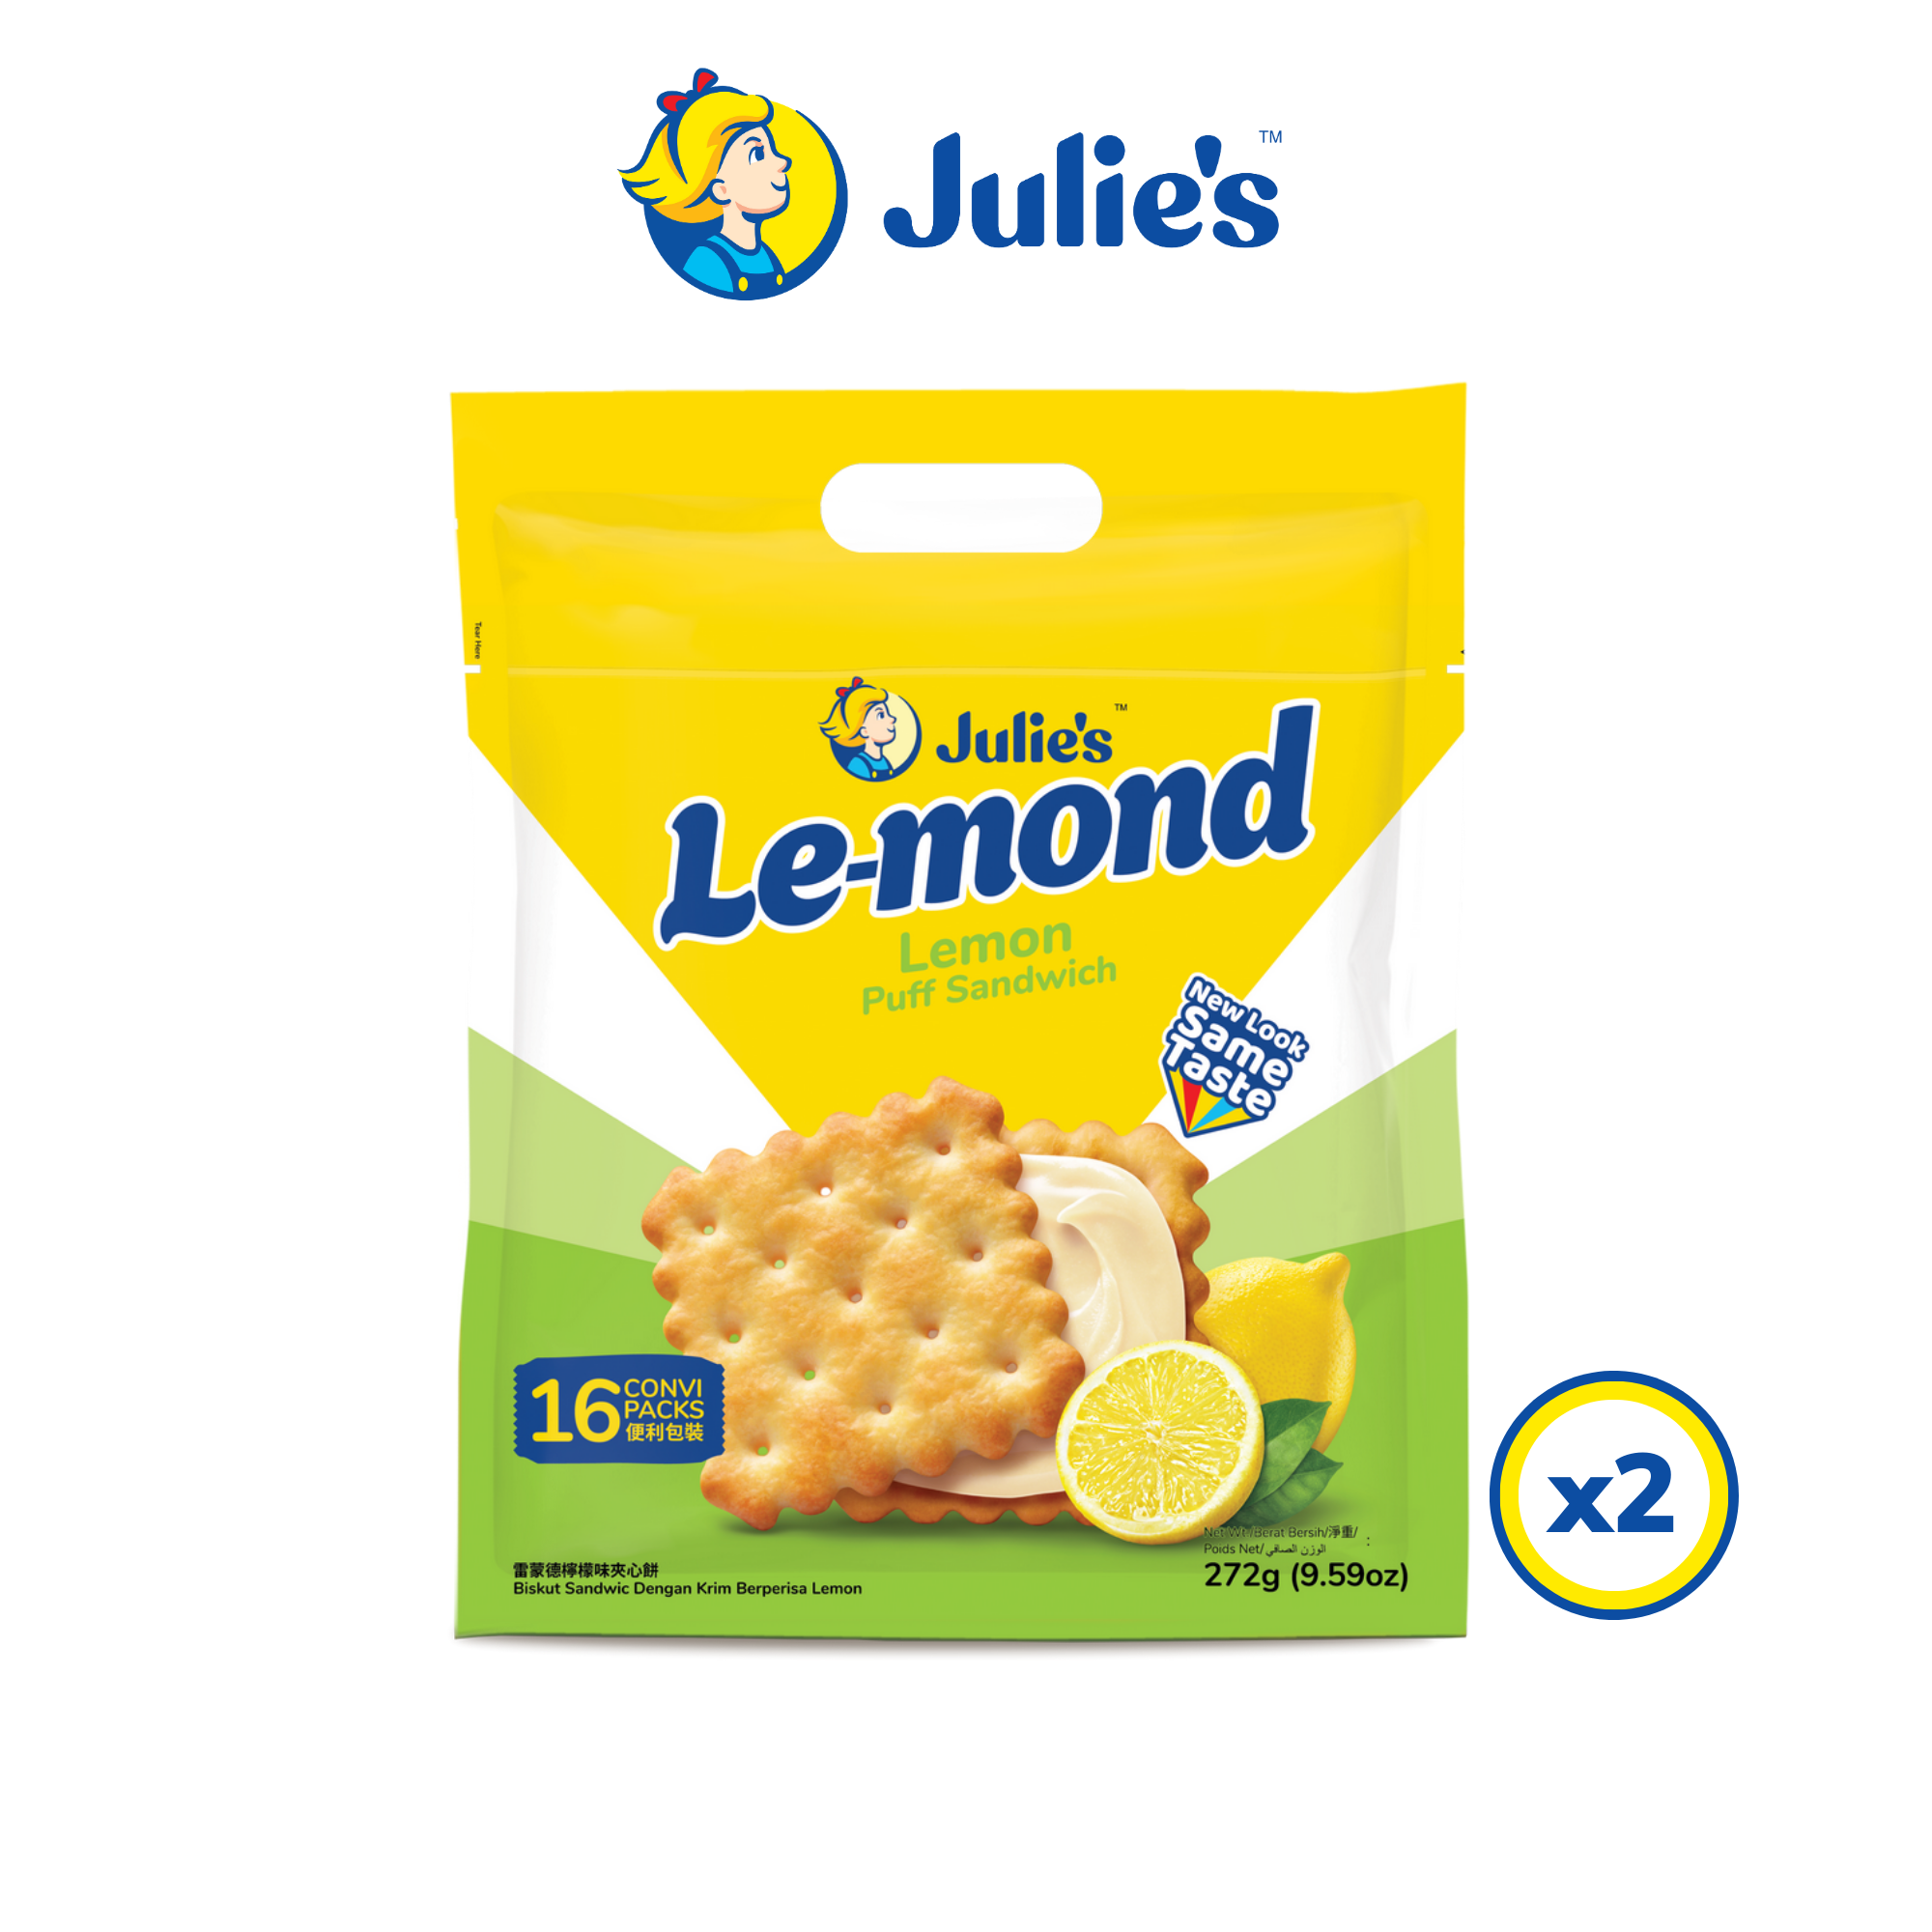 Julie's Le-mond Lemon Puff Sandwich 272g x 2 packs